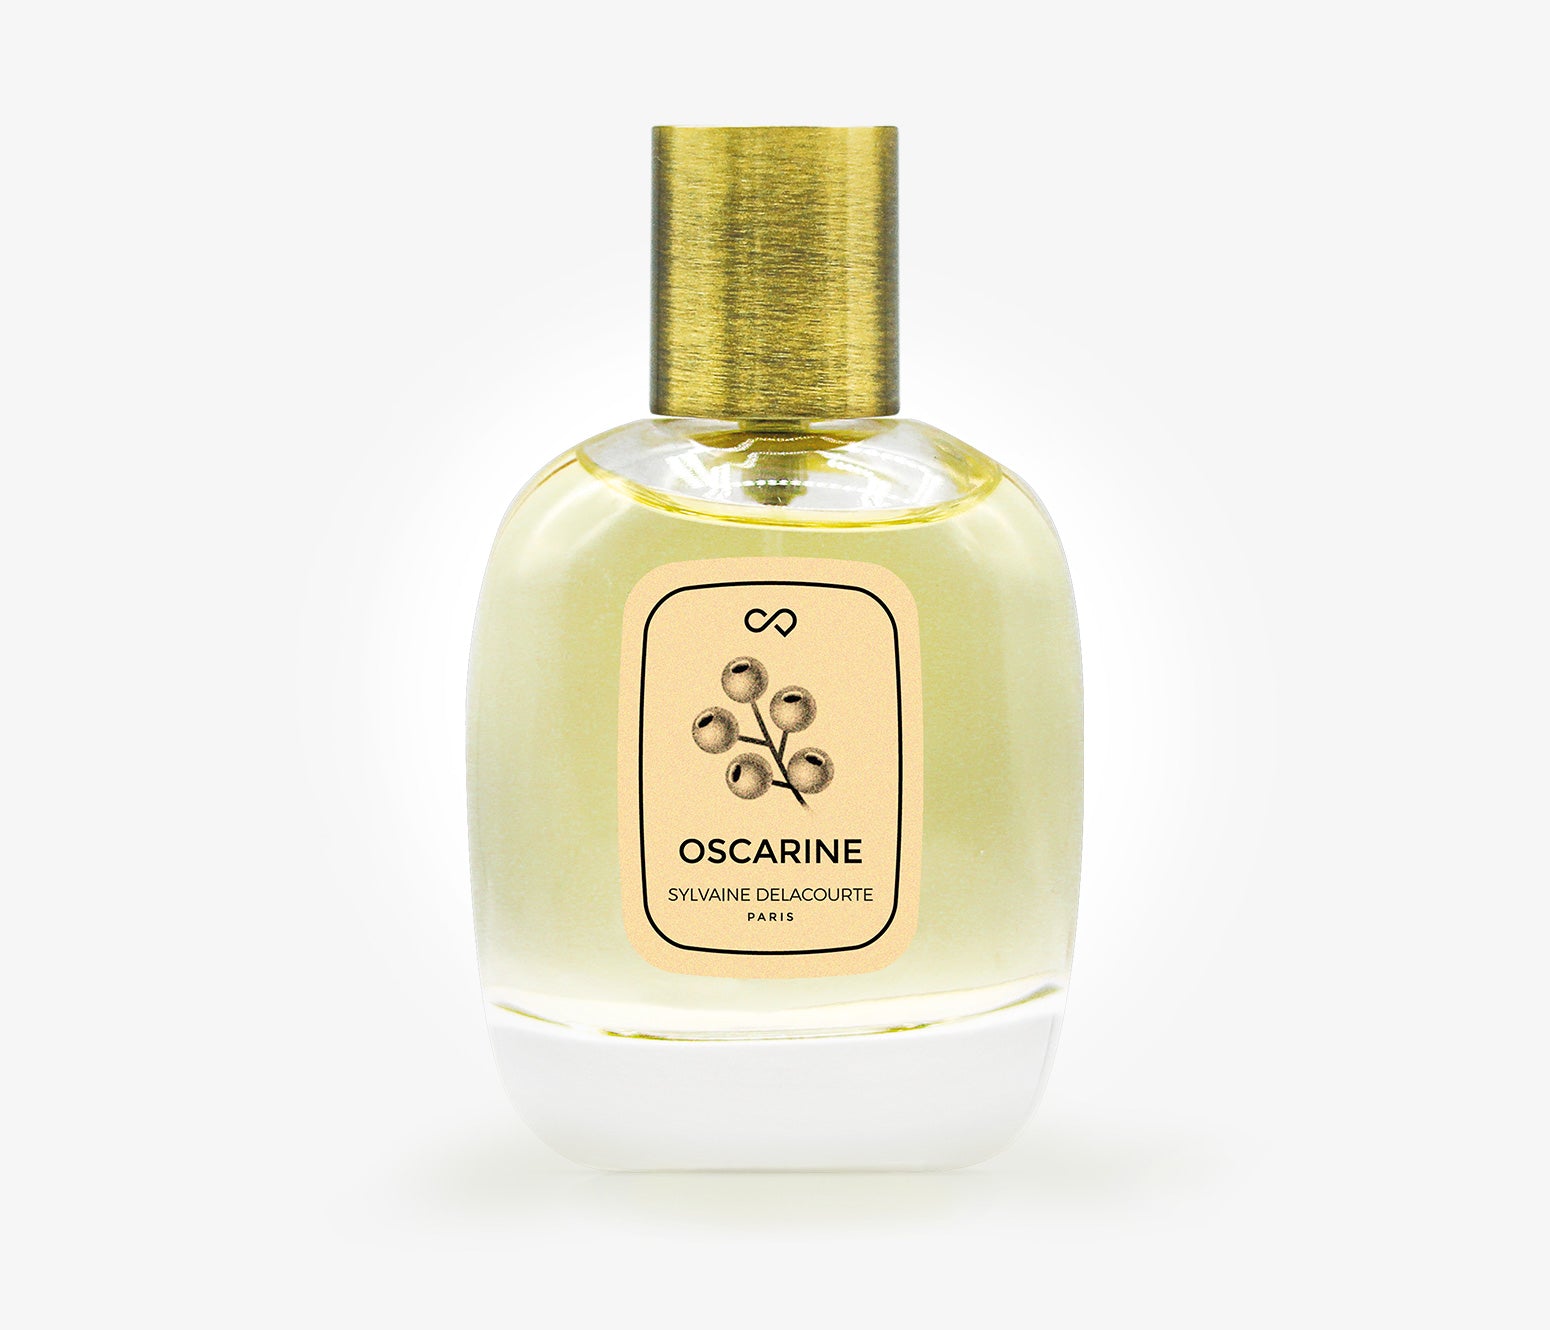 Sylvaine Delacourte - Oscarine - 30ml - RVT001 - product image - Fragrance - Les Senteurs